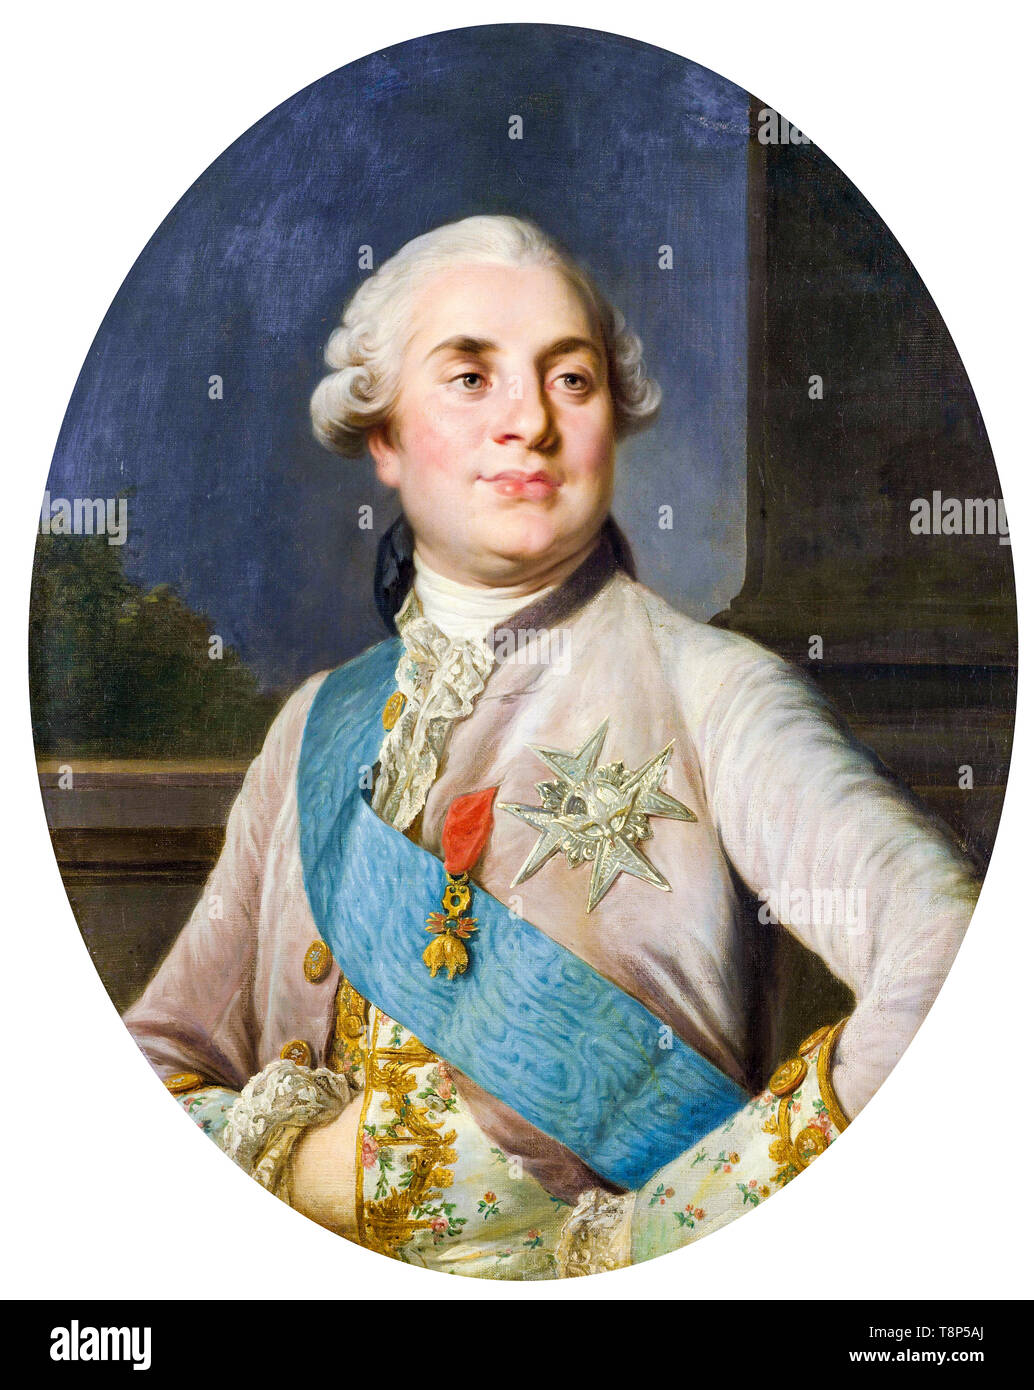 Portrait de Louis XVI, roi de France, l'atelier de Joseph Siffrède Duplessis, ch. 1777 Banque D'Images